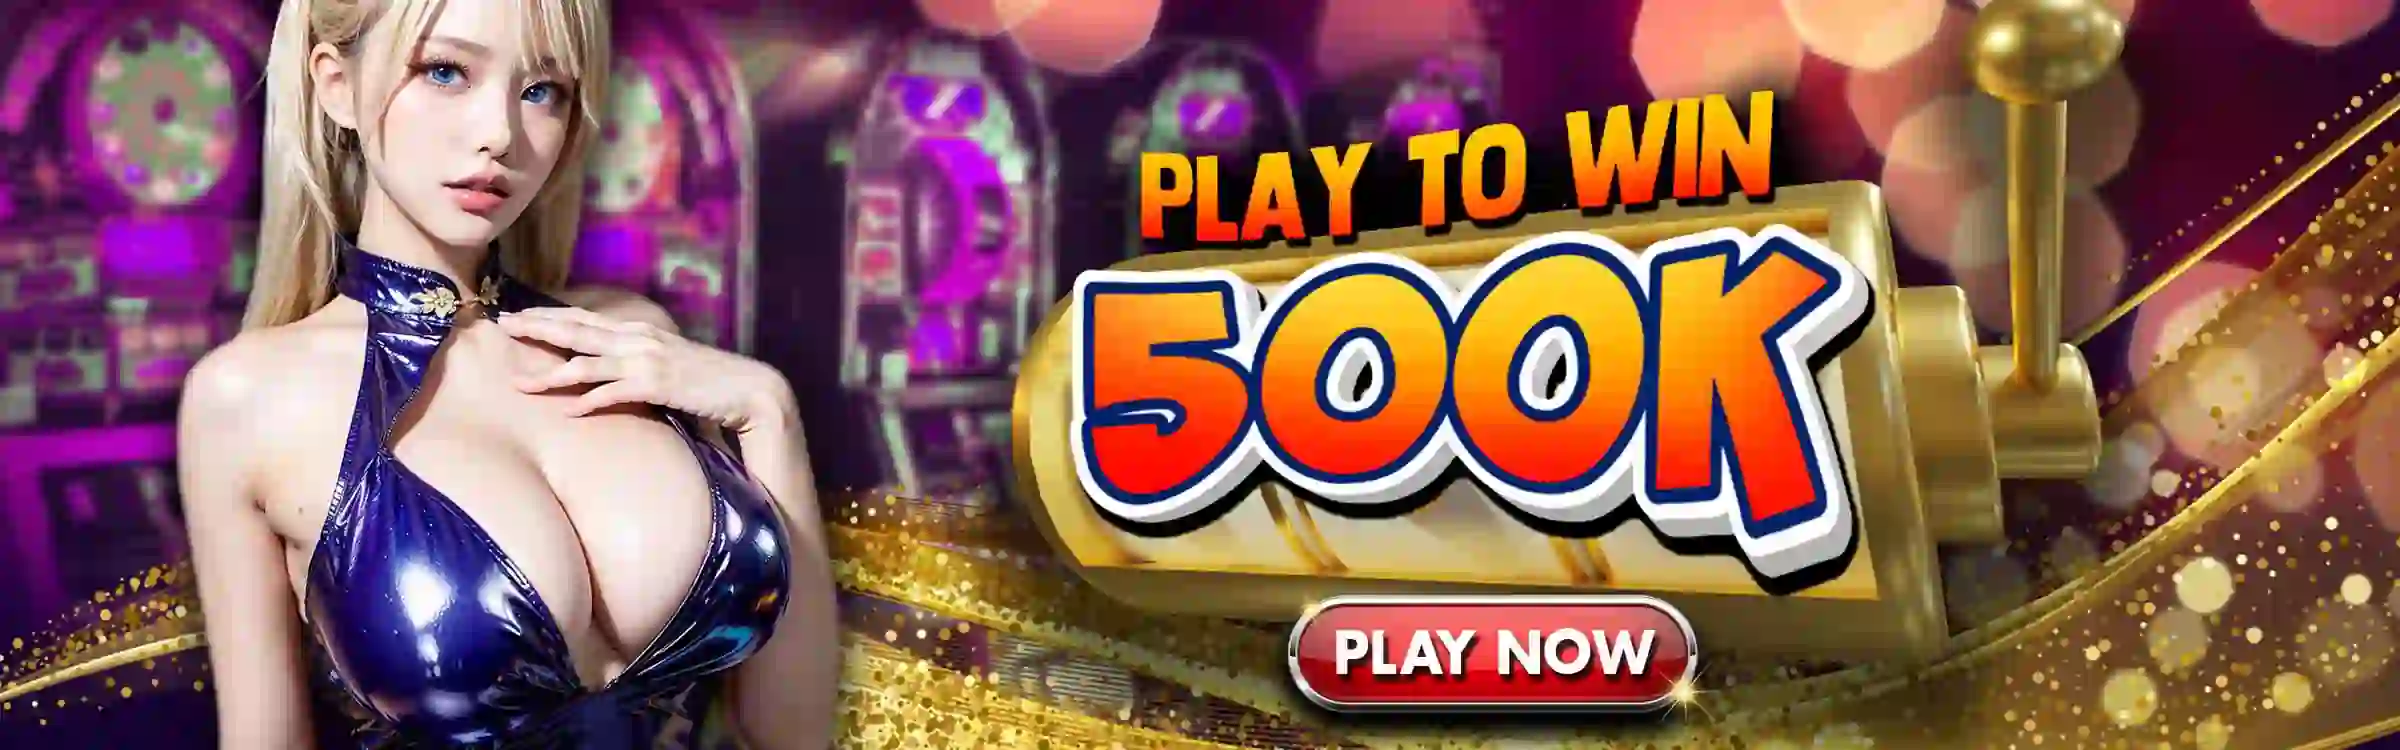 55bmw Online Casino